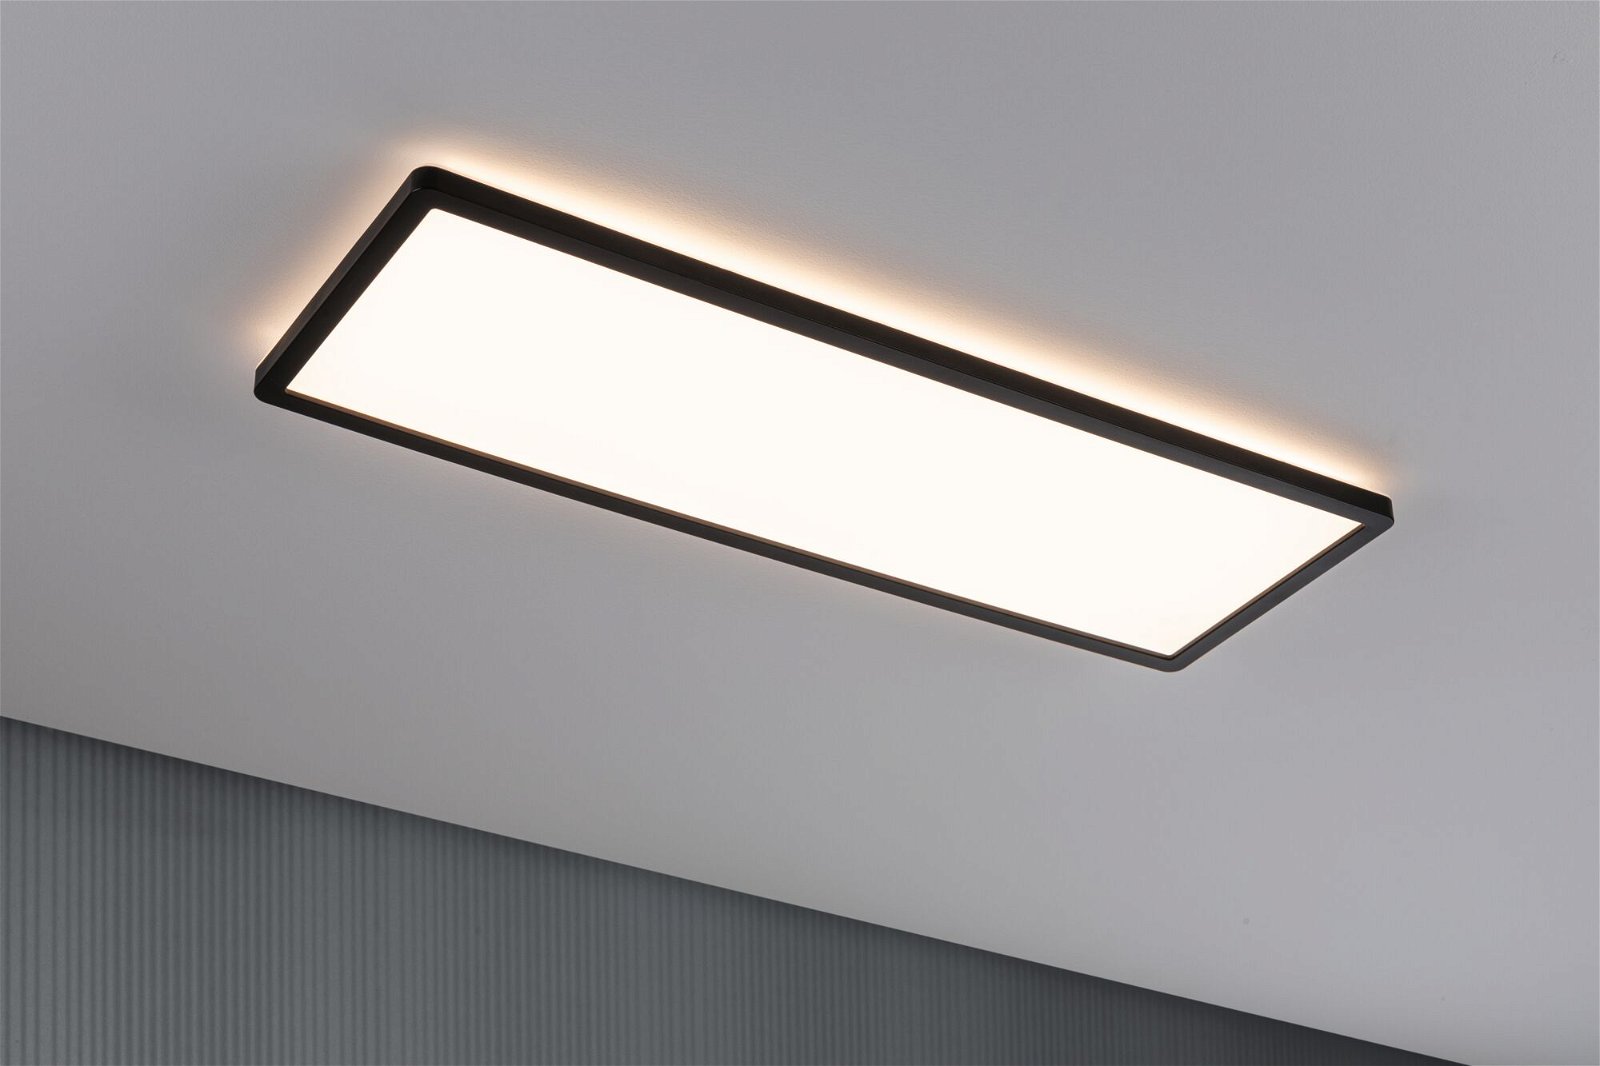 Panneau LED 3-Step-Dim Atria Shine Backlight carré 580x200mm 22W 1800lm 3000K Noir gradable